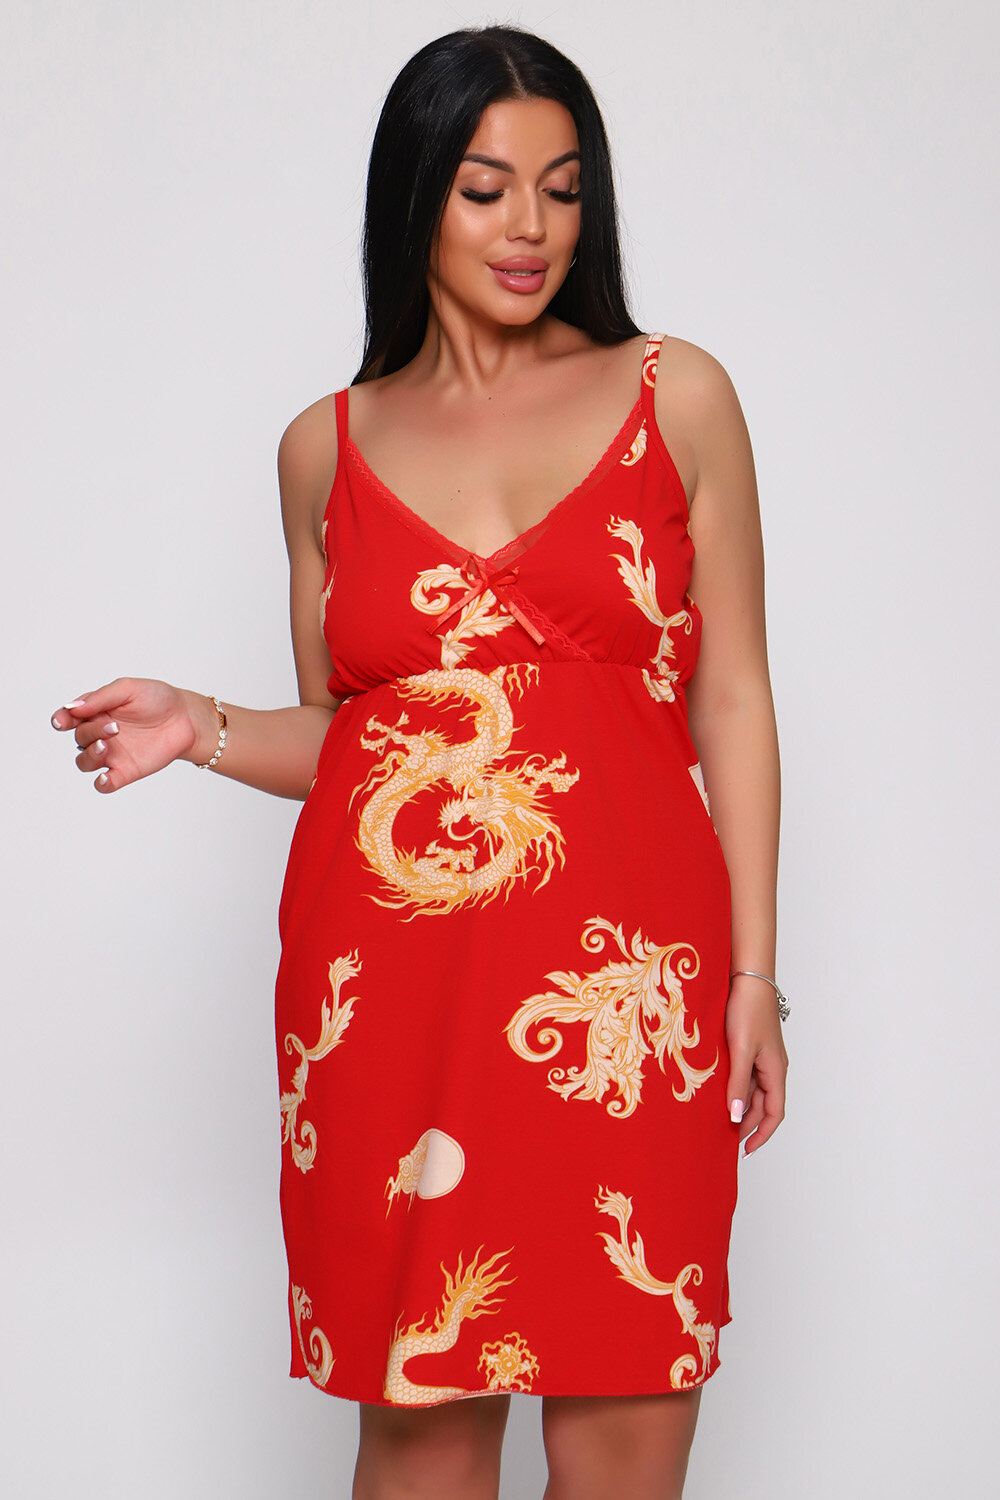 Сорочка с драконами "Руся", цвет красный, размер 48 - фотография № 2